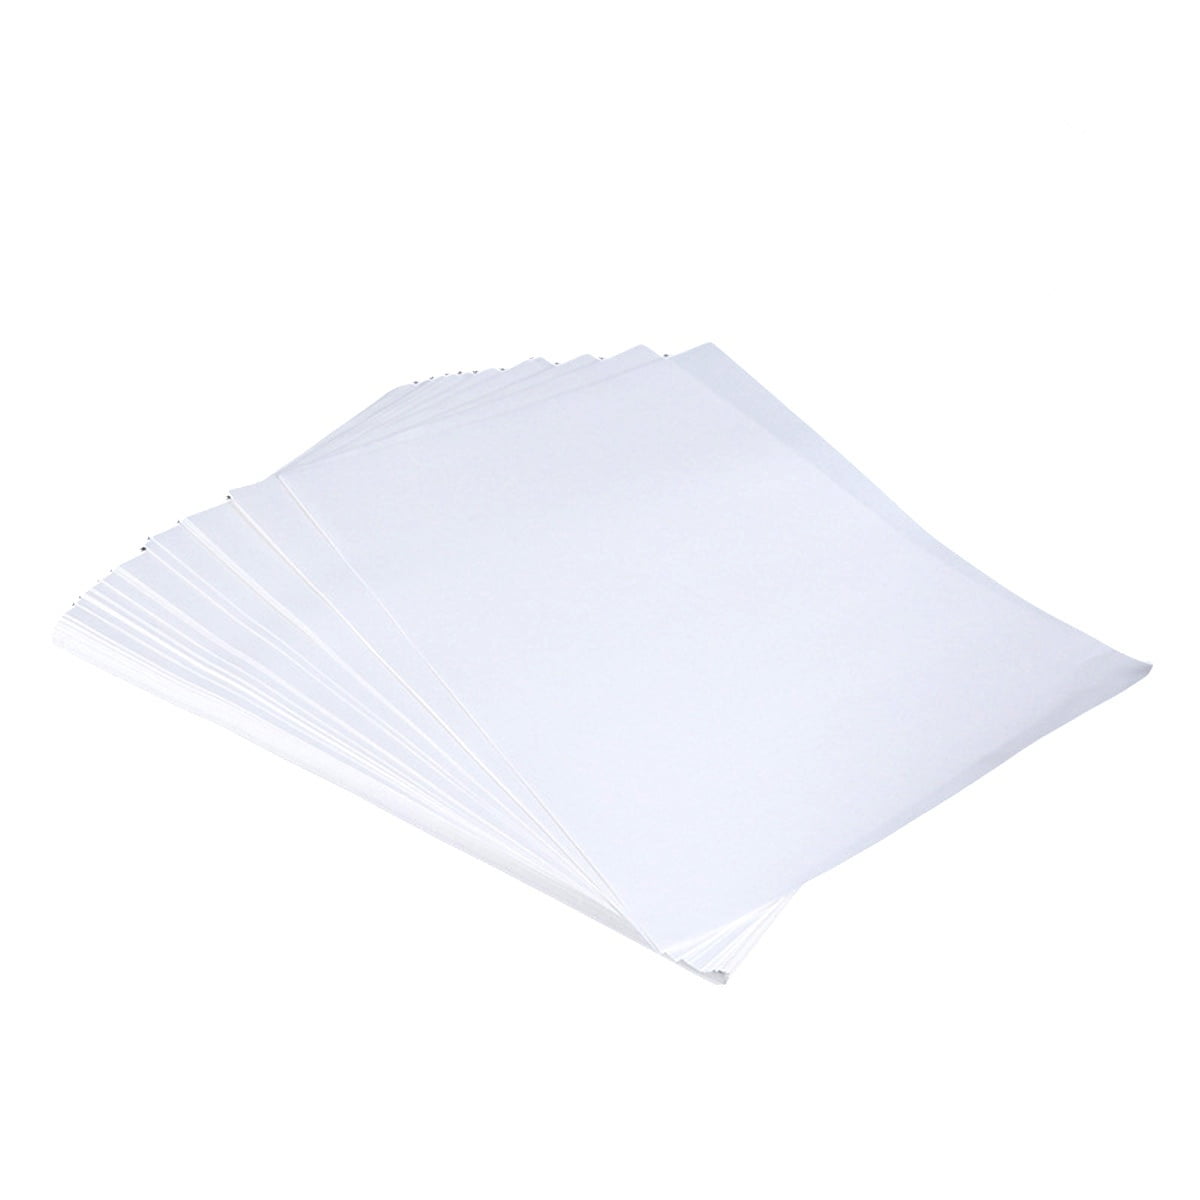 Octago Premium Sublimation Paper (8.5x11 Inches) Dye Sublimation